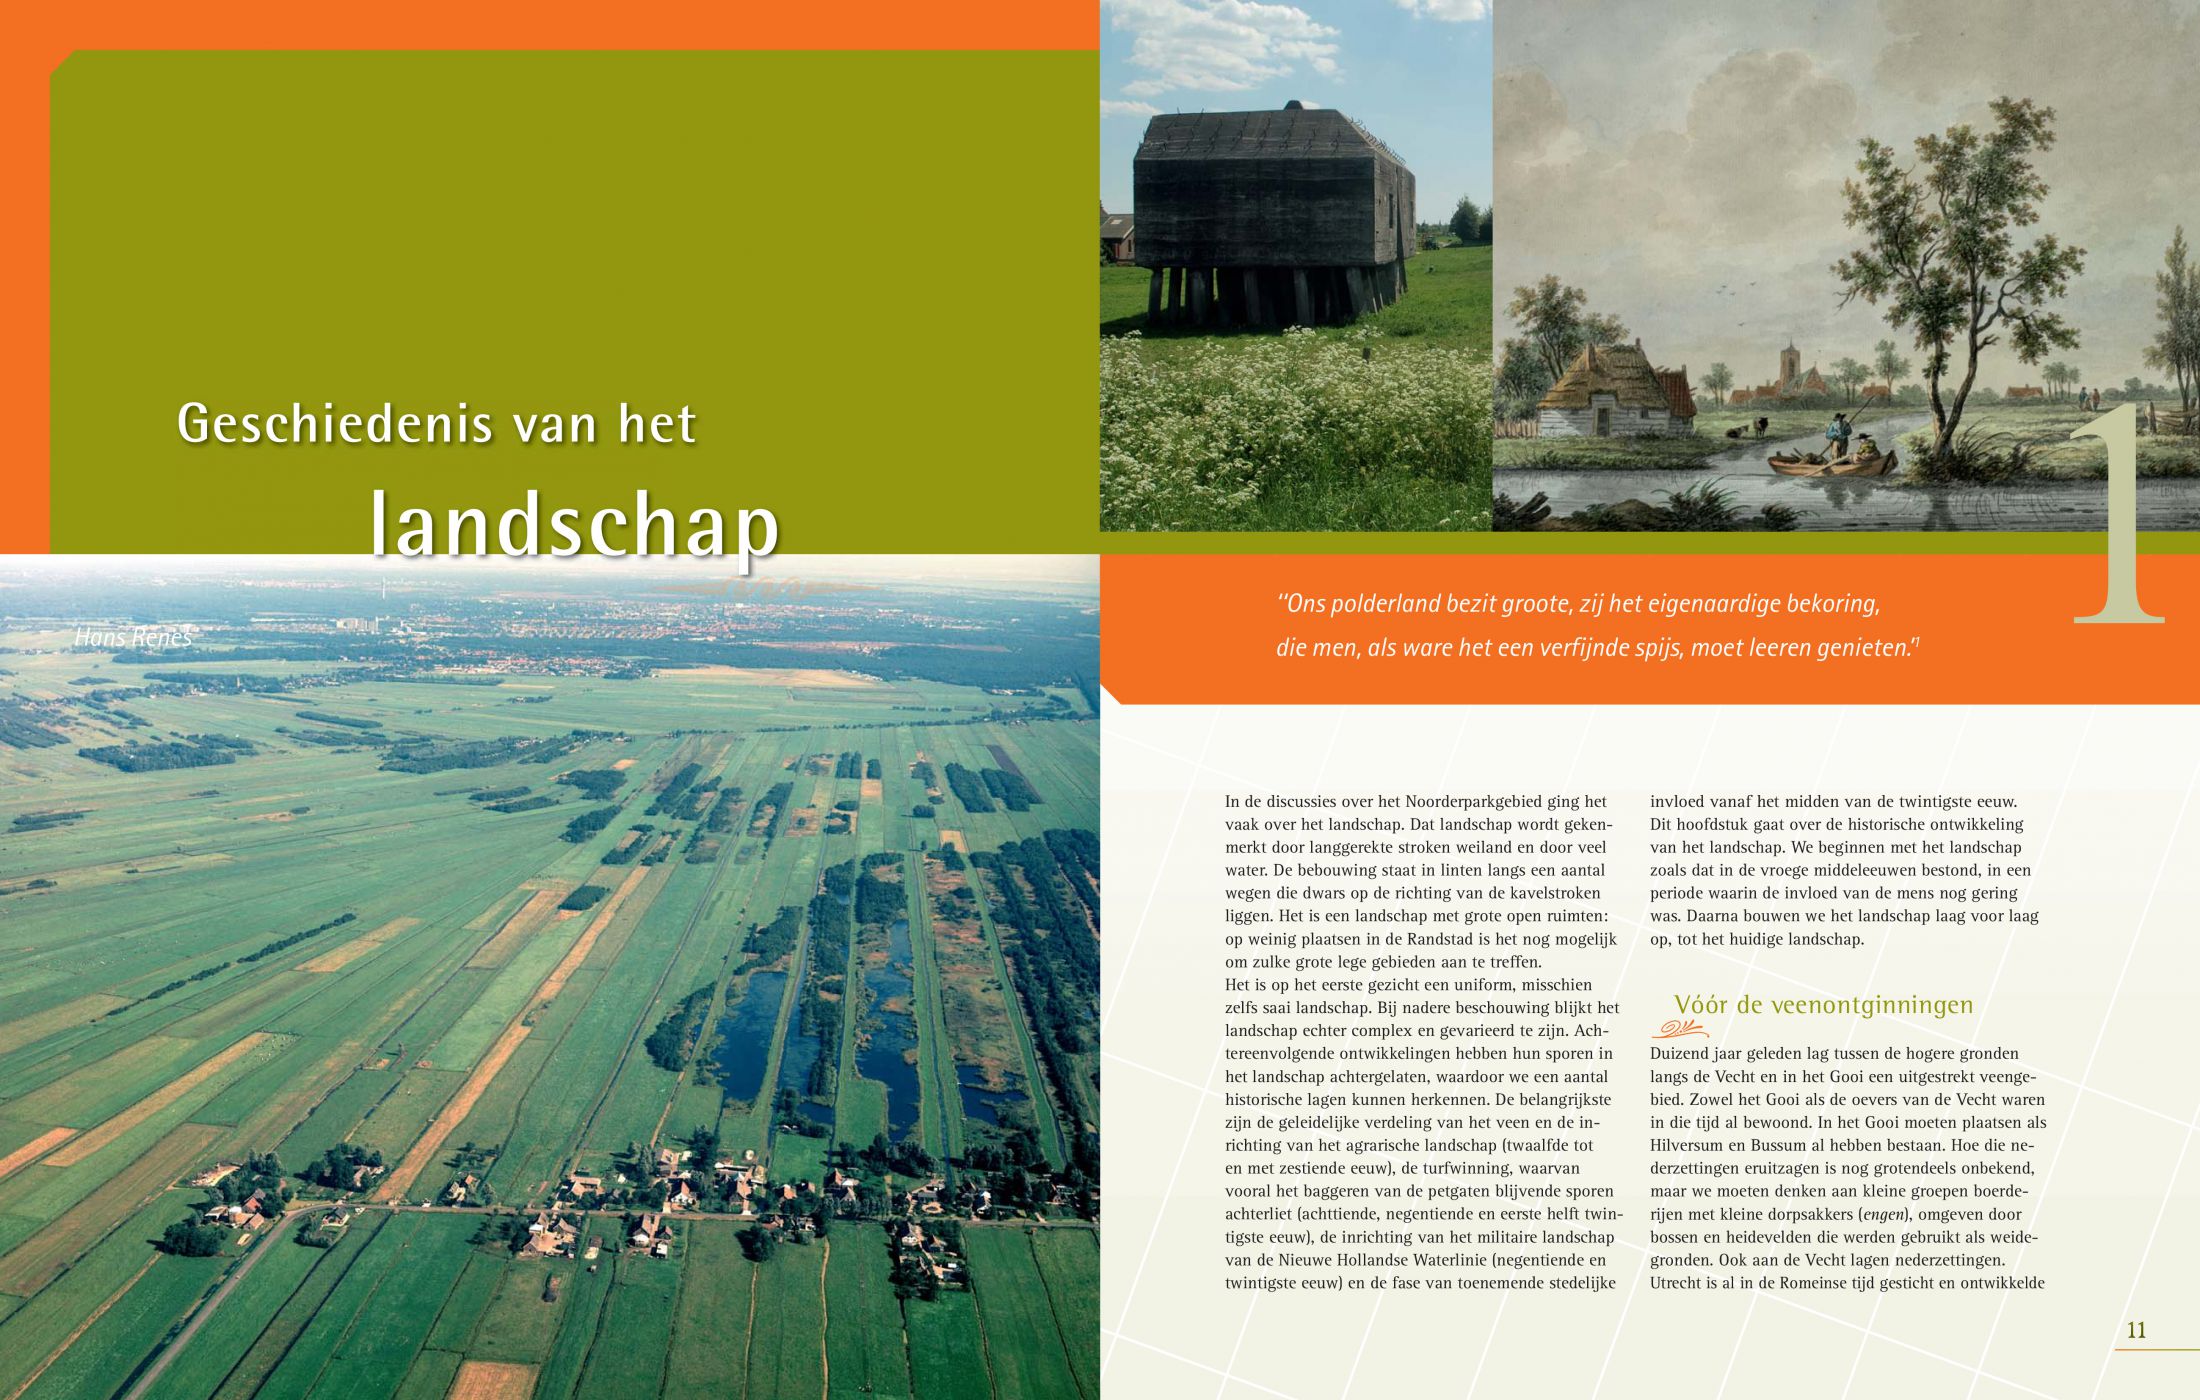 Inkijkexemplaar van het boek: <em>Noorderpark. Herinrichting van het landschap tussen Utrecht en het Gooi</em> - © Uitgeverij Matrijs